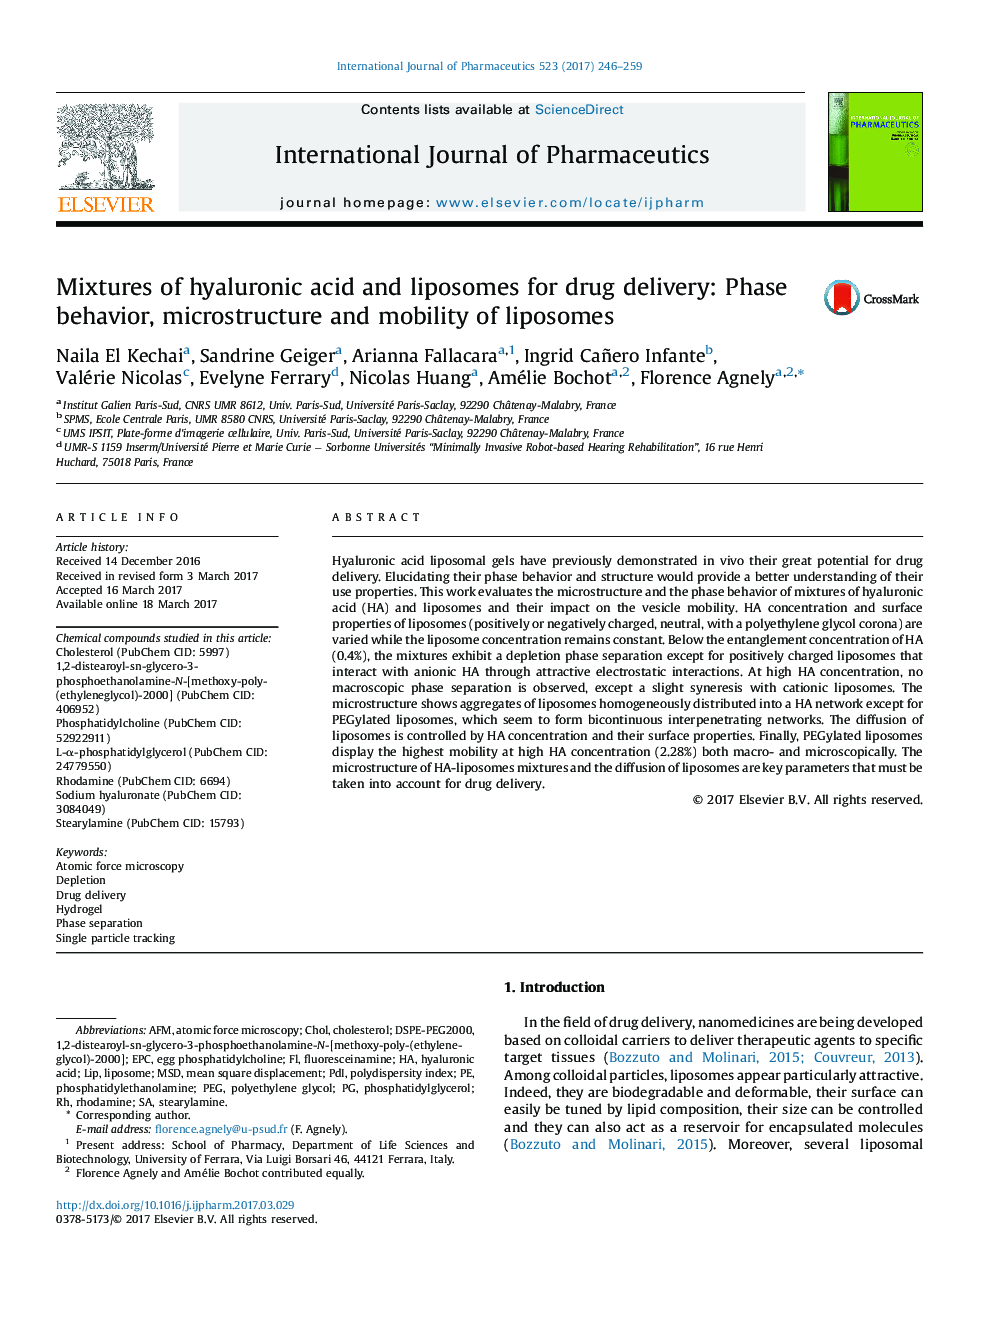 مخلوط اسید هیالورونیک و لیپوزوم برای تحویل دارو: رفتار فاز، ریزساختار و تحرک لیپوزوم 